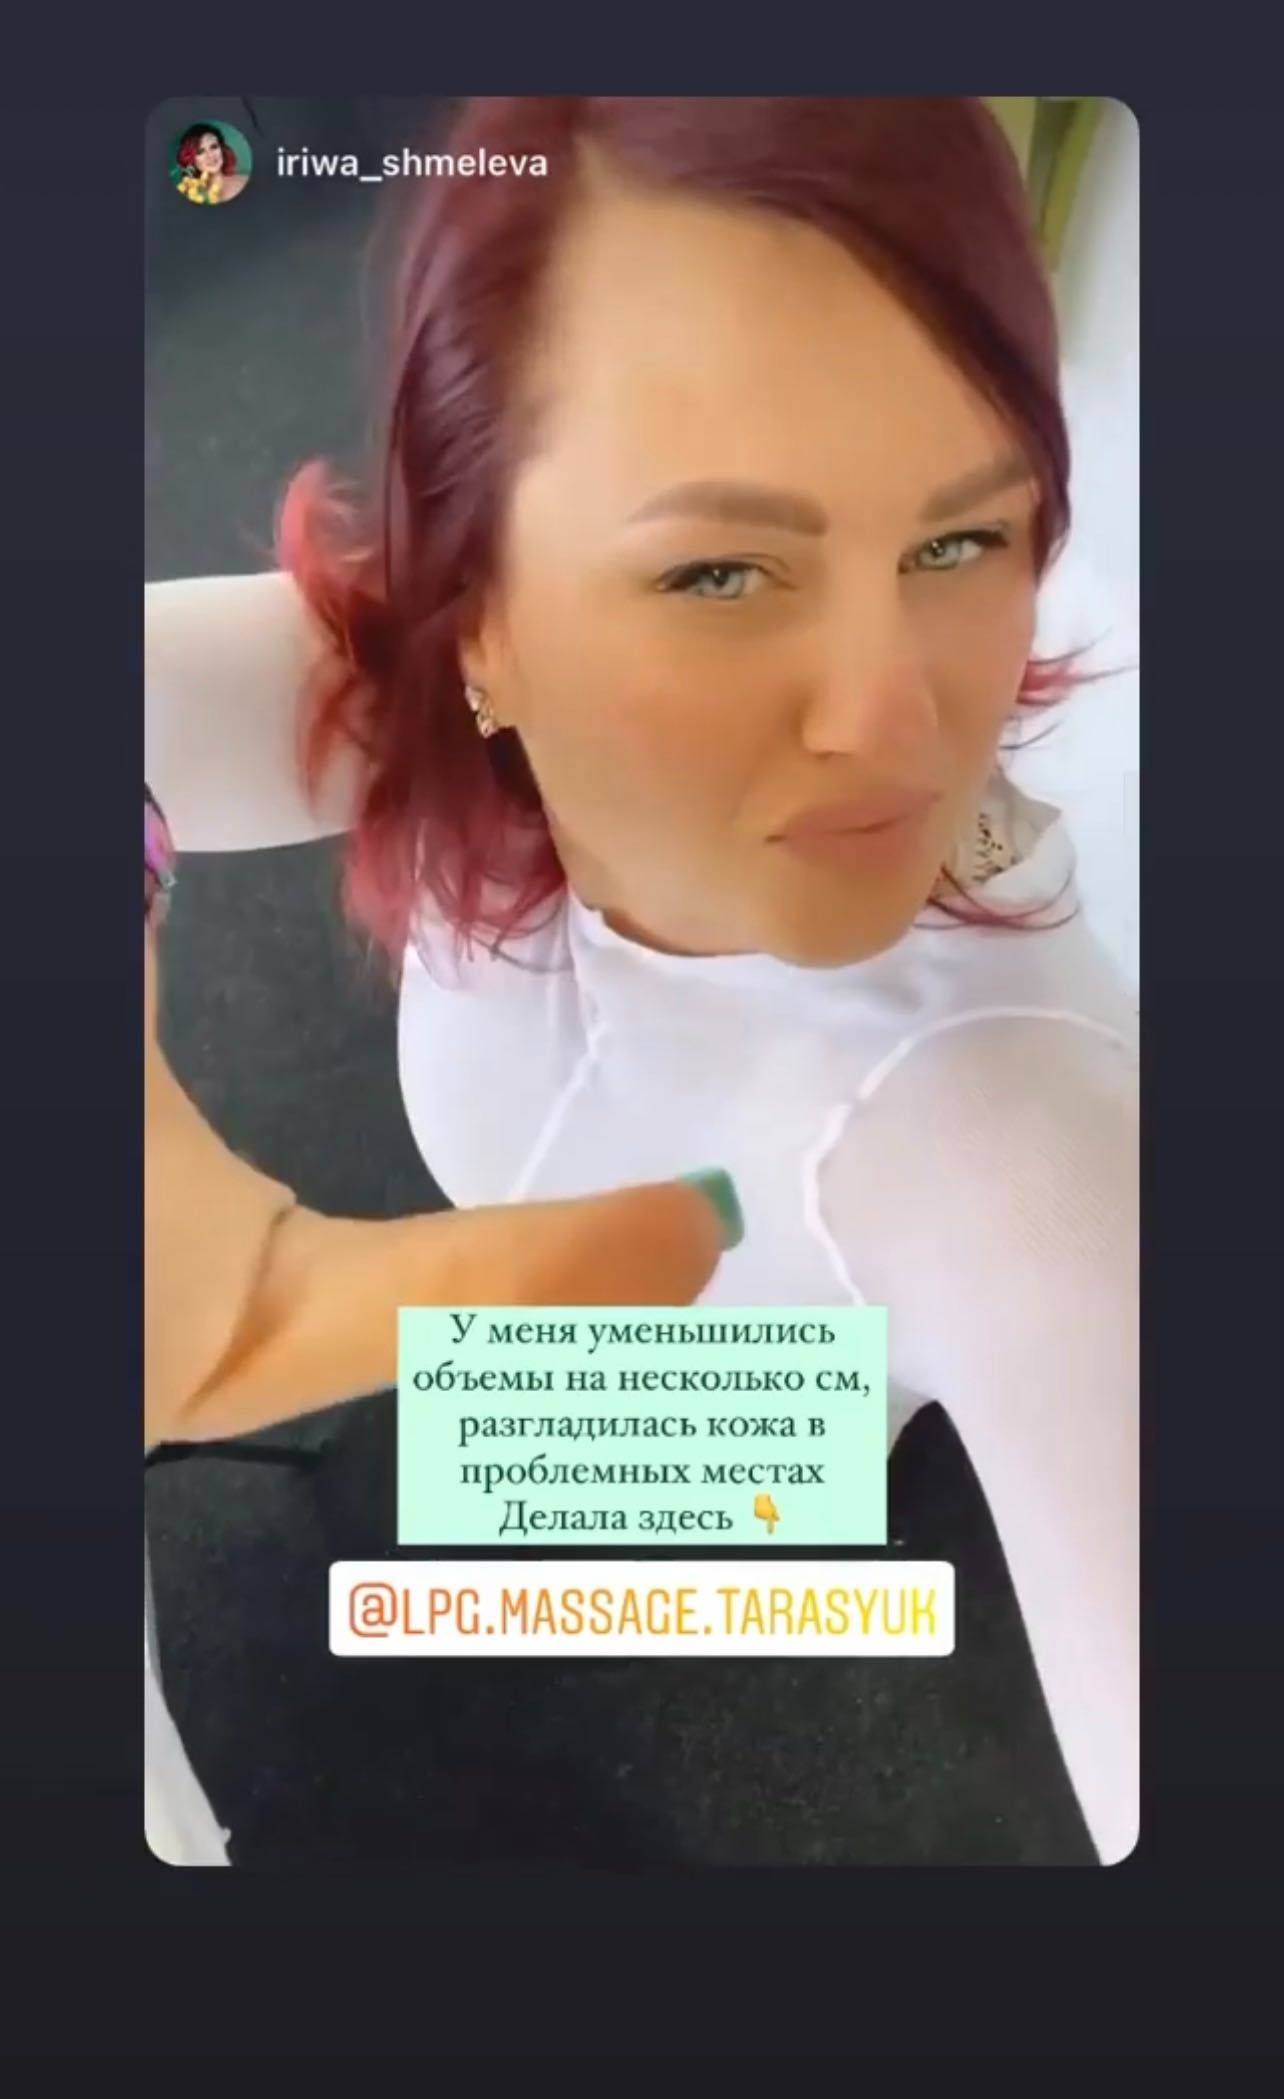 LPG масаж Київ тіло або обличчя 200 грн